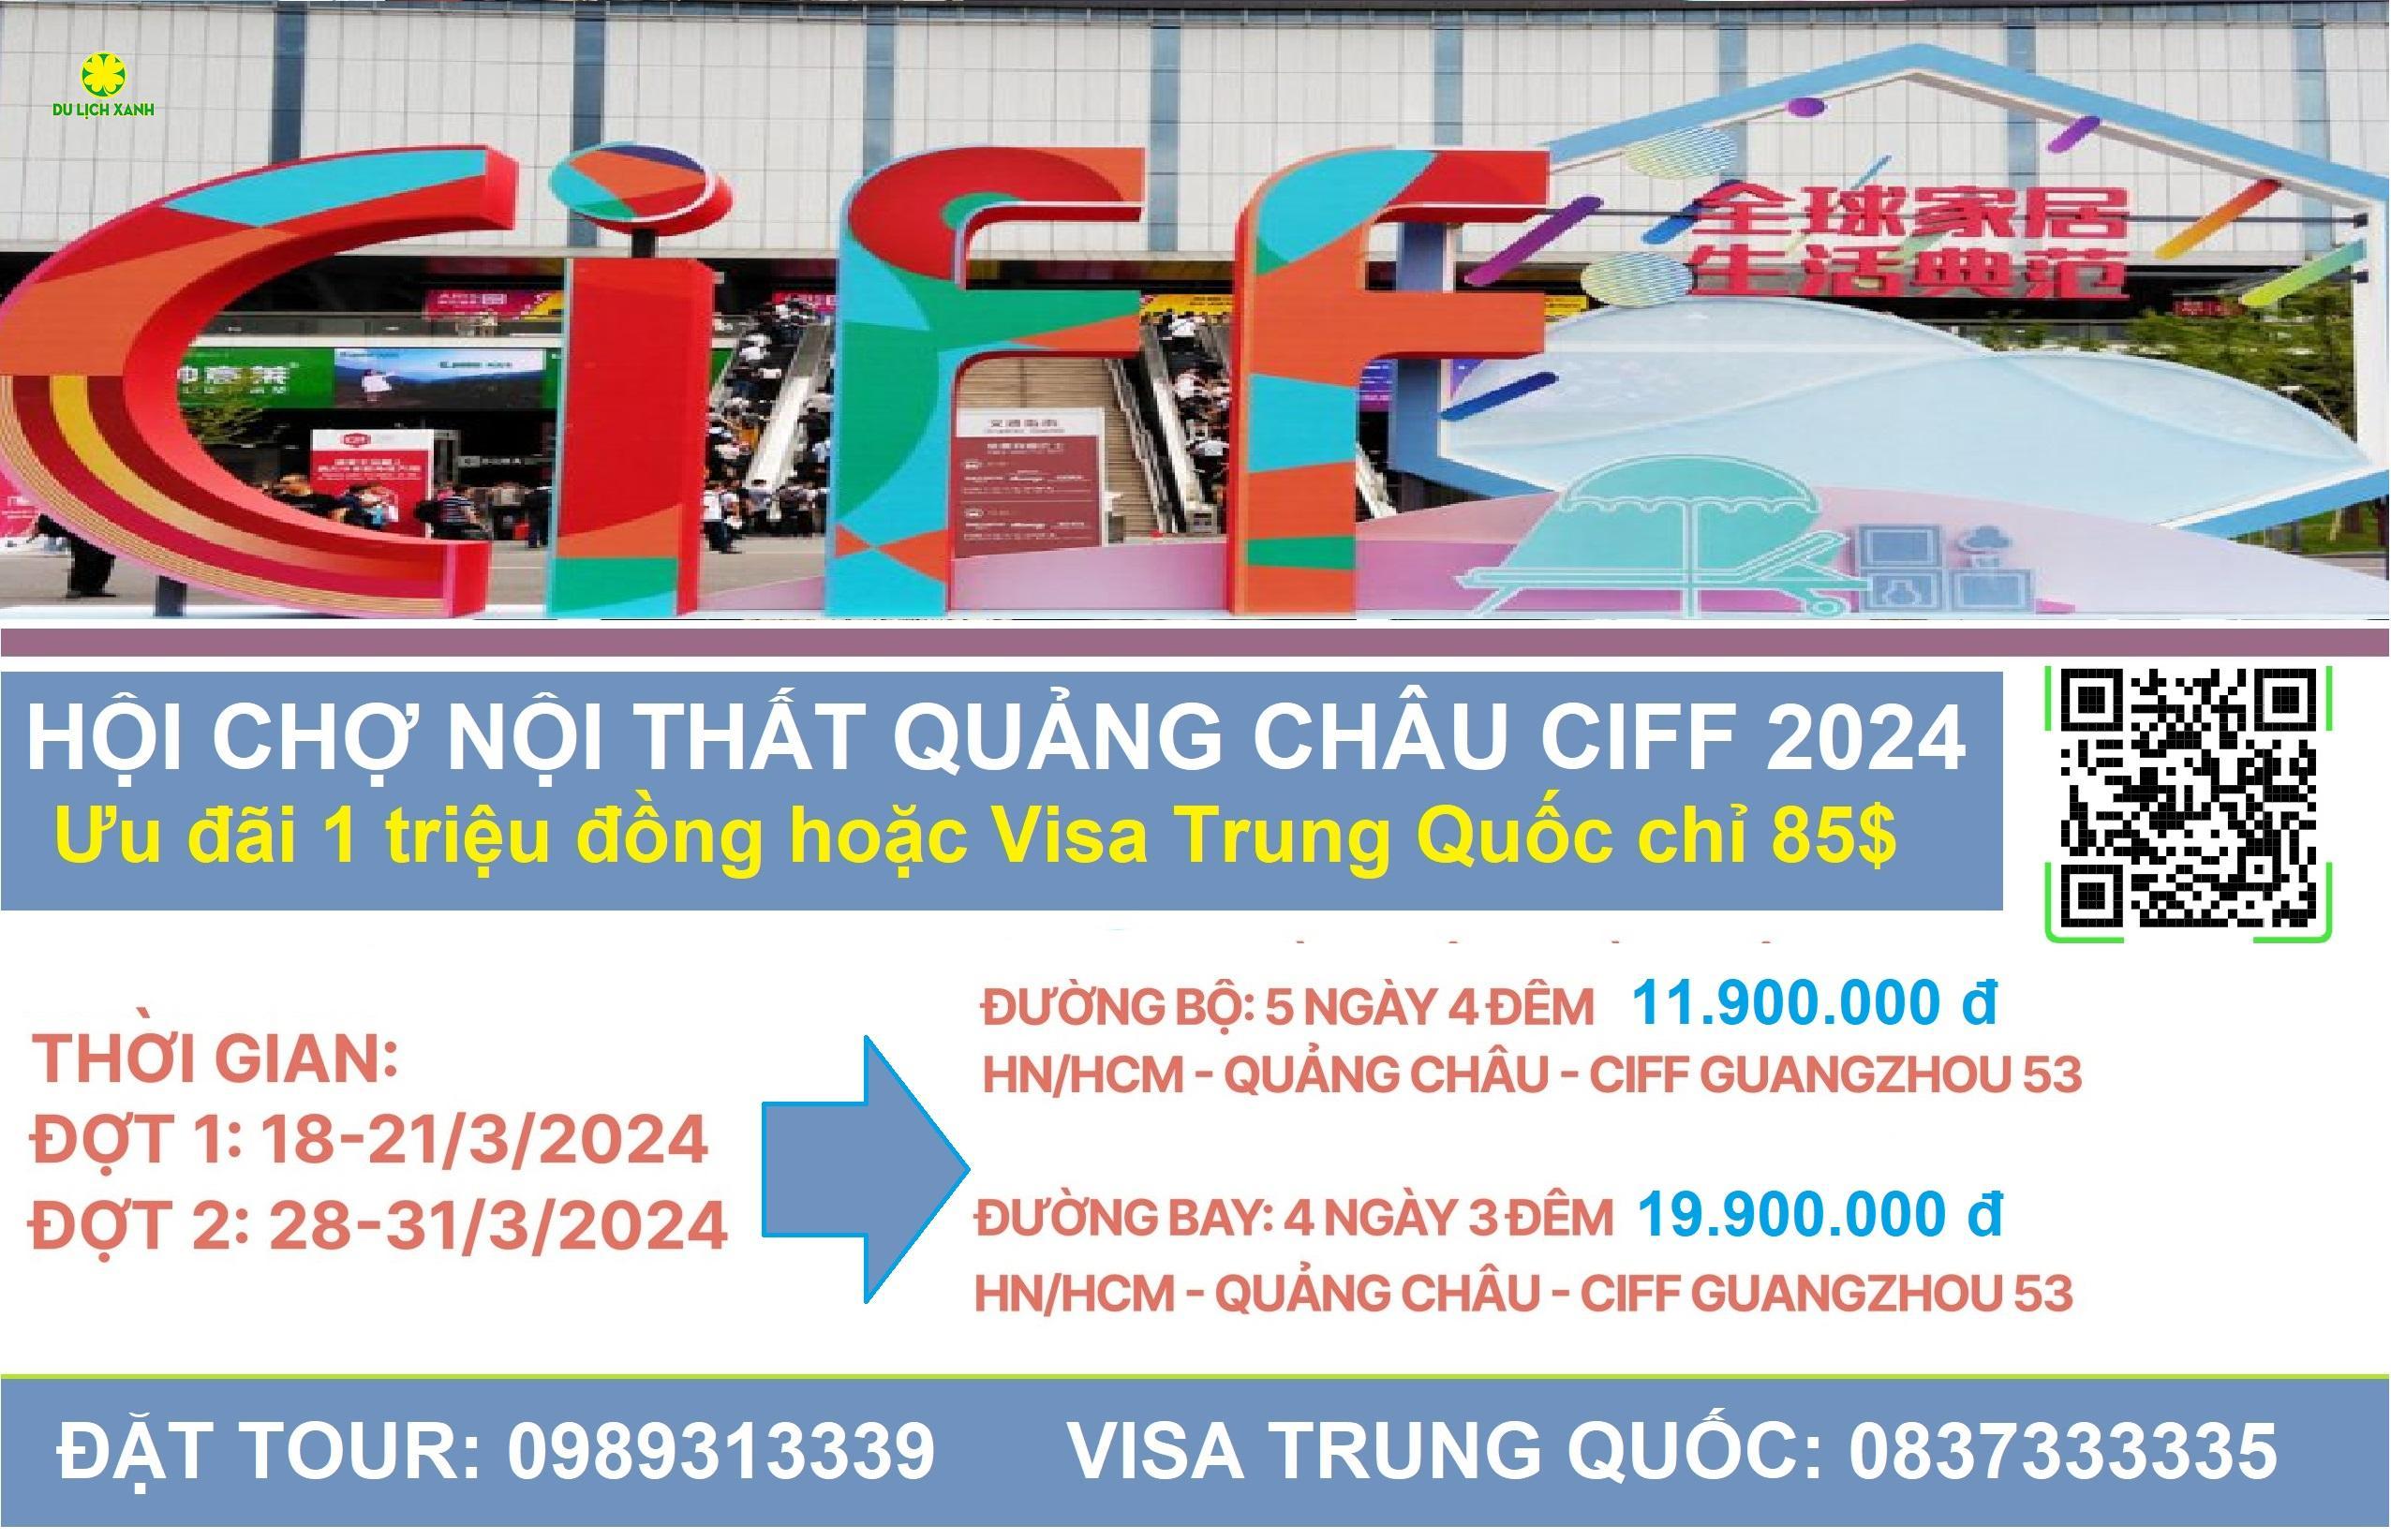 Tour hội chợ nội thất Quảng Châu CIFF 2024 từ Hồ Chí Minh 4 ngày